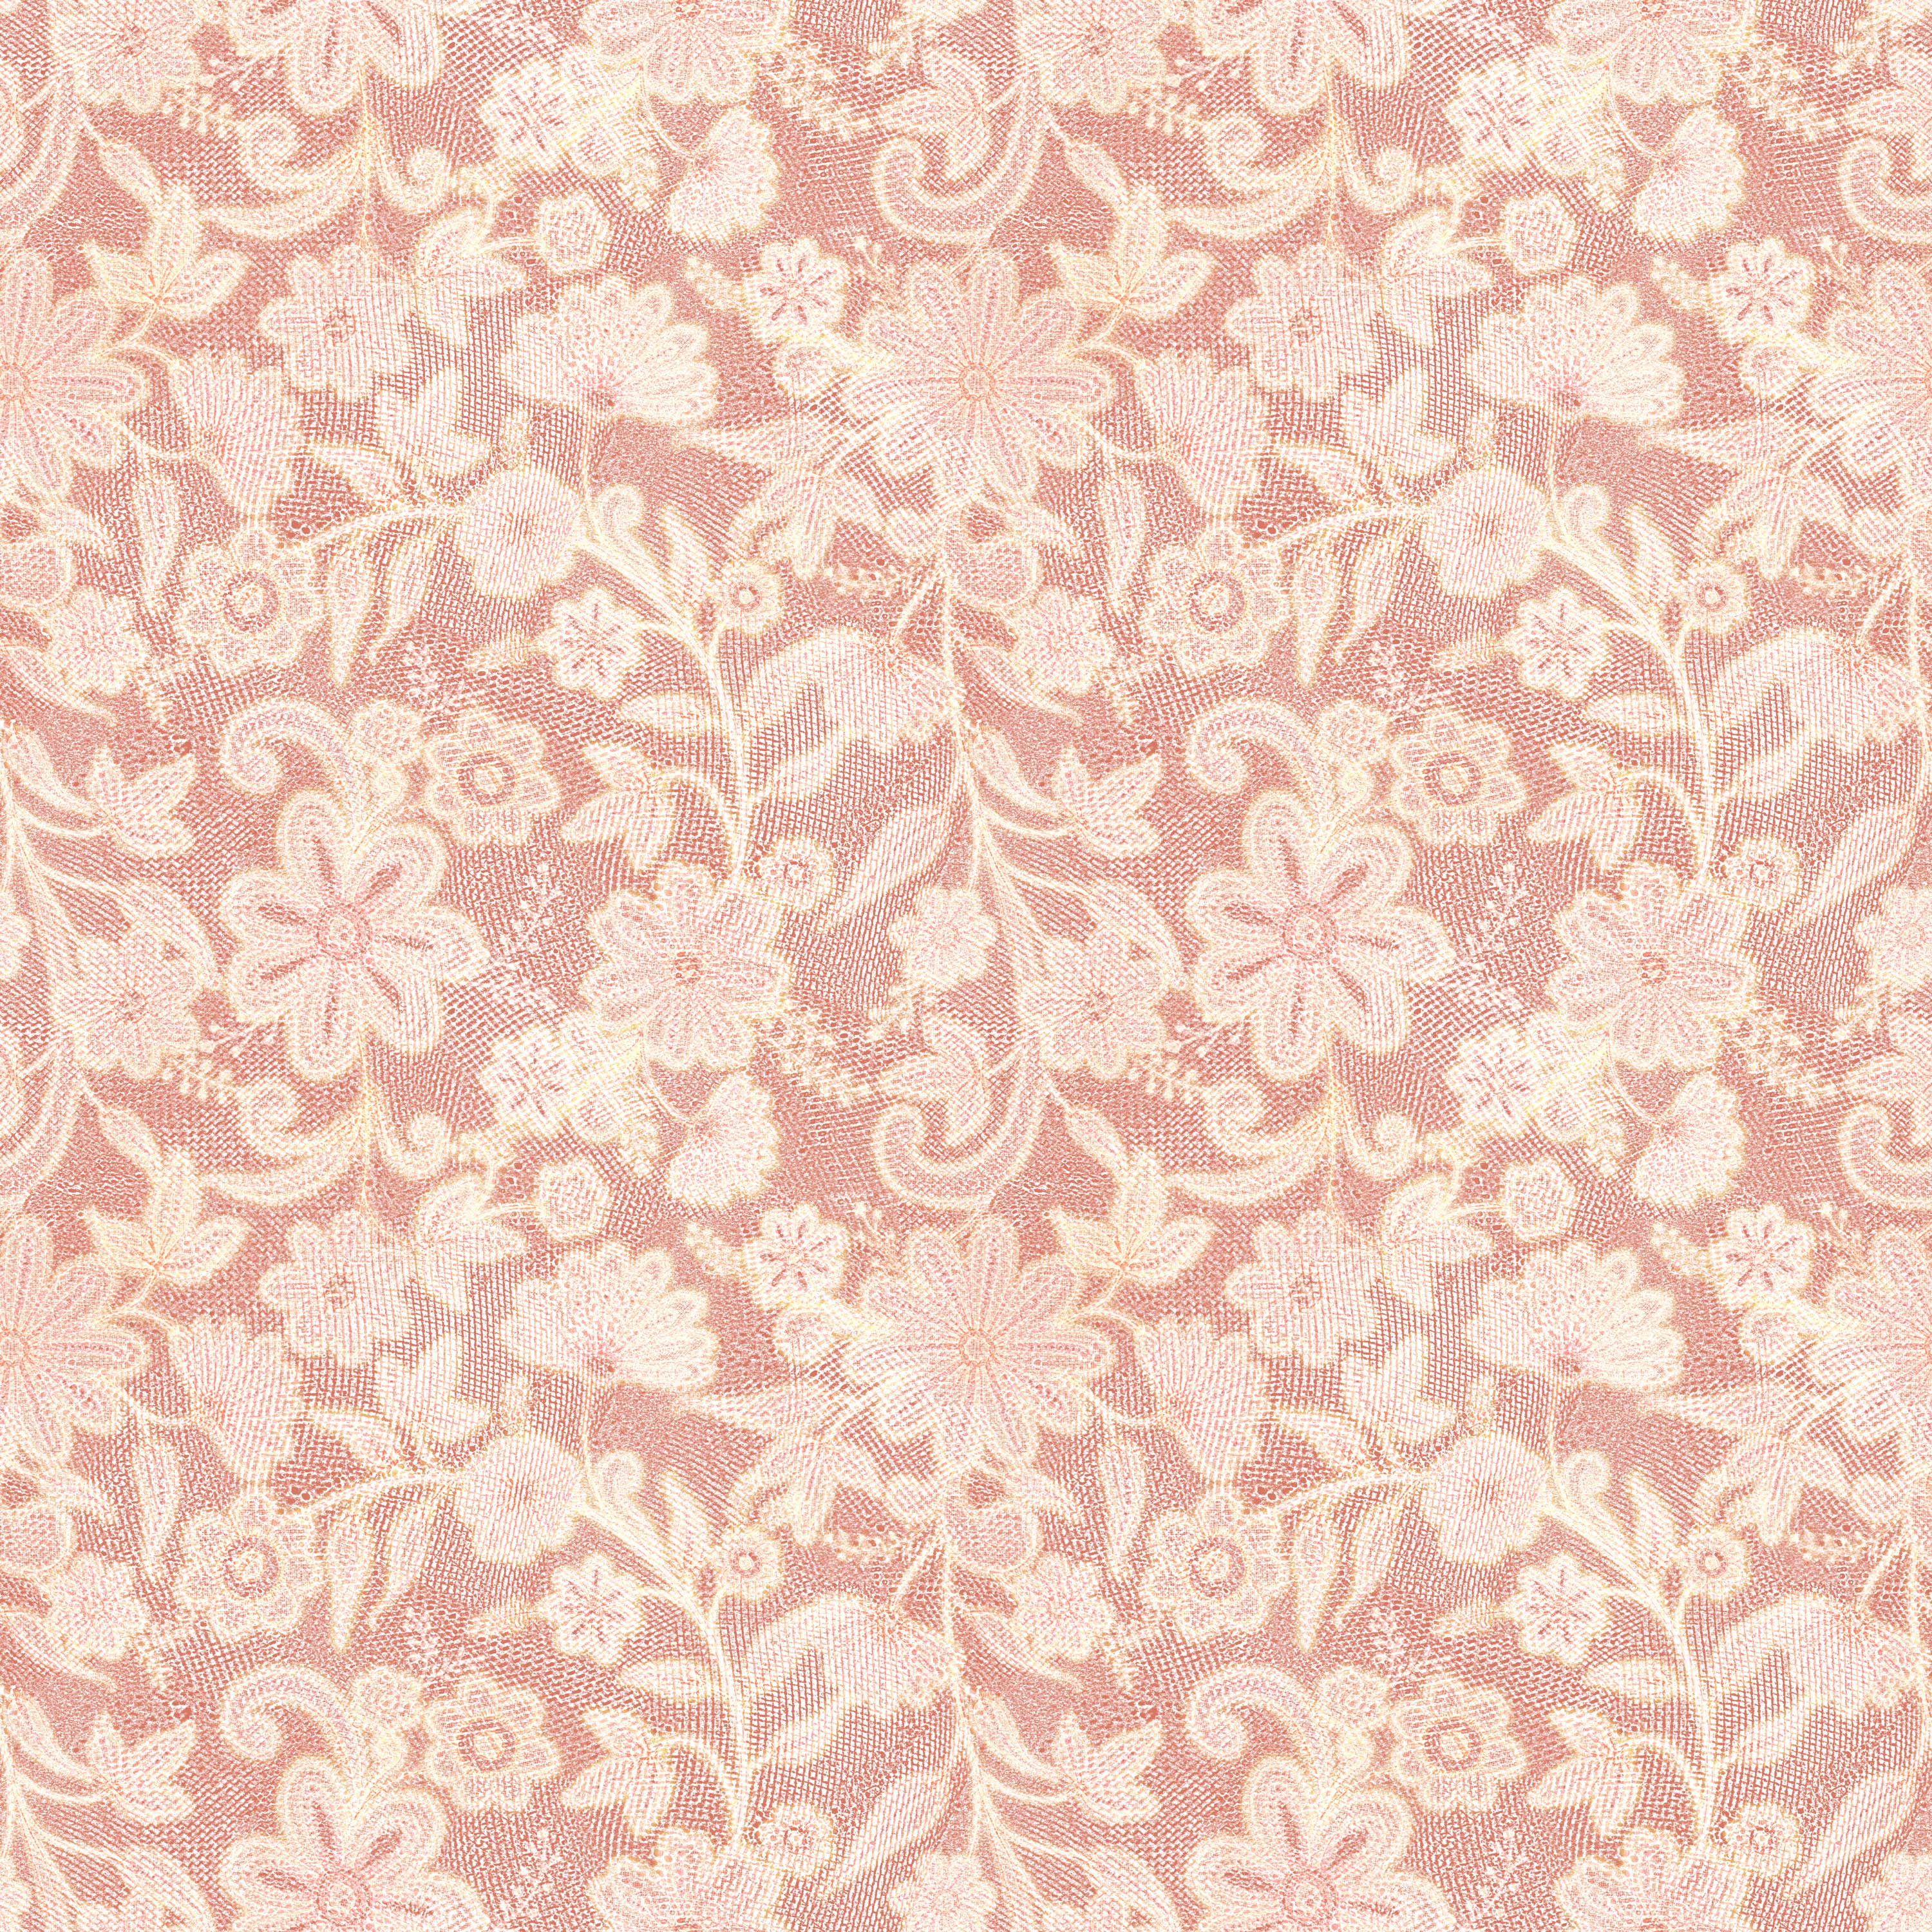 壁紙 背景イラスト 花の模様 柄 パターン No 053 ピンク レース